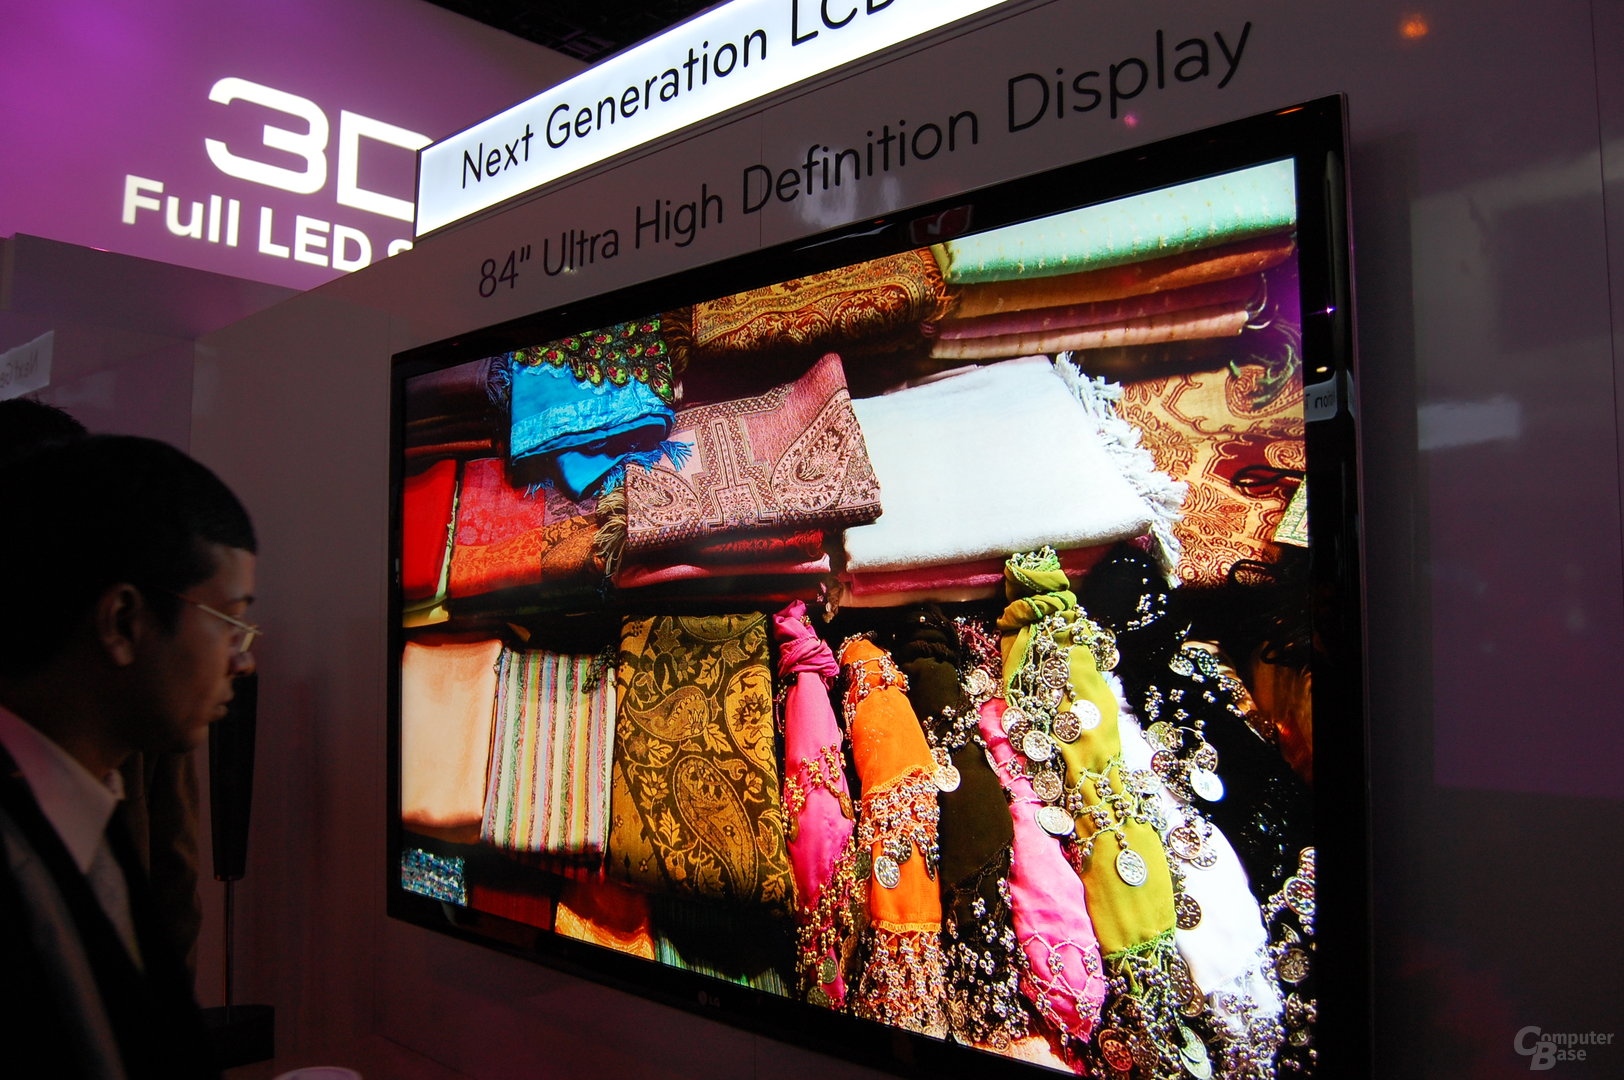 84" Ultra High Definition Display von LG